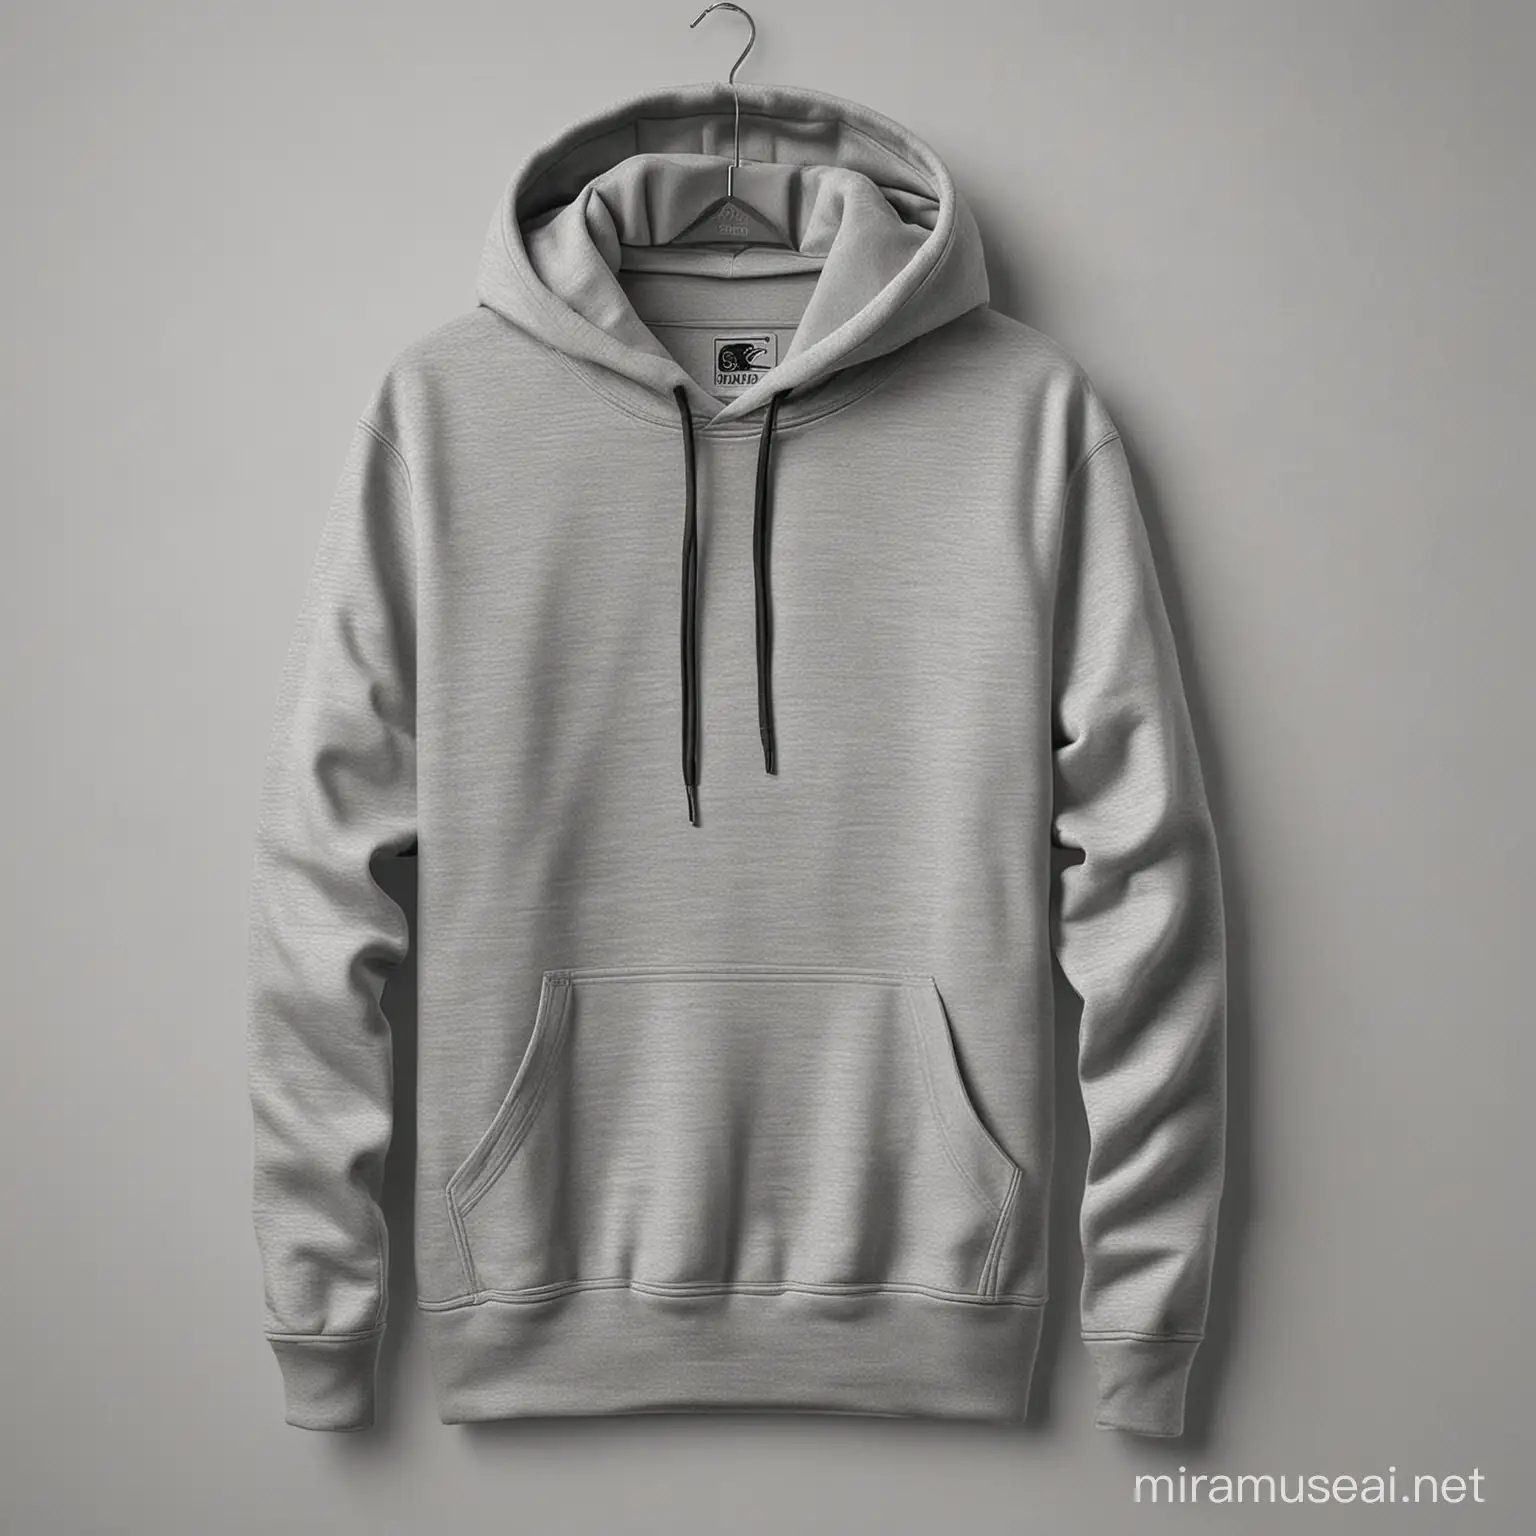 je veux un hoodie que porte un sportif sans logo sans rien

